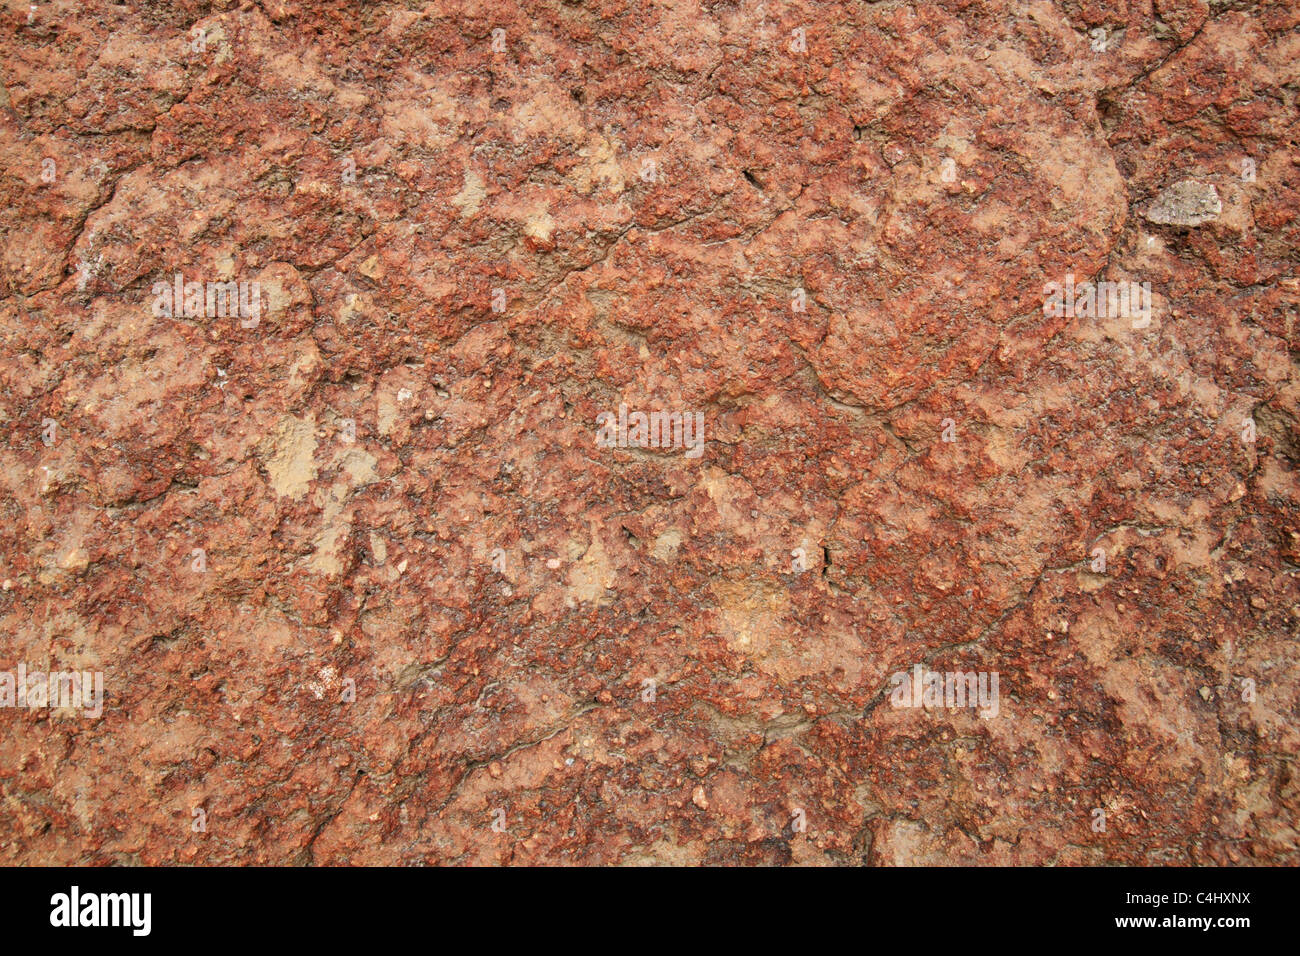 La roche de tuf volcanique rouge rugueux texture d'arrière-plan Banque D'Images